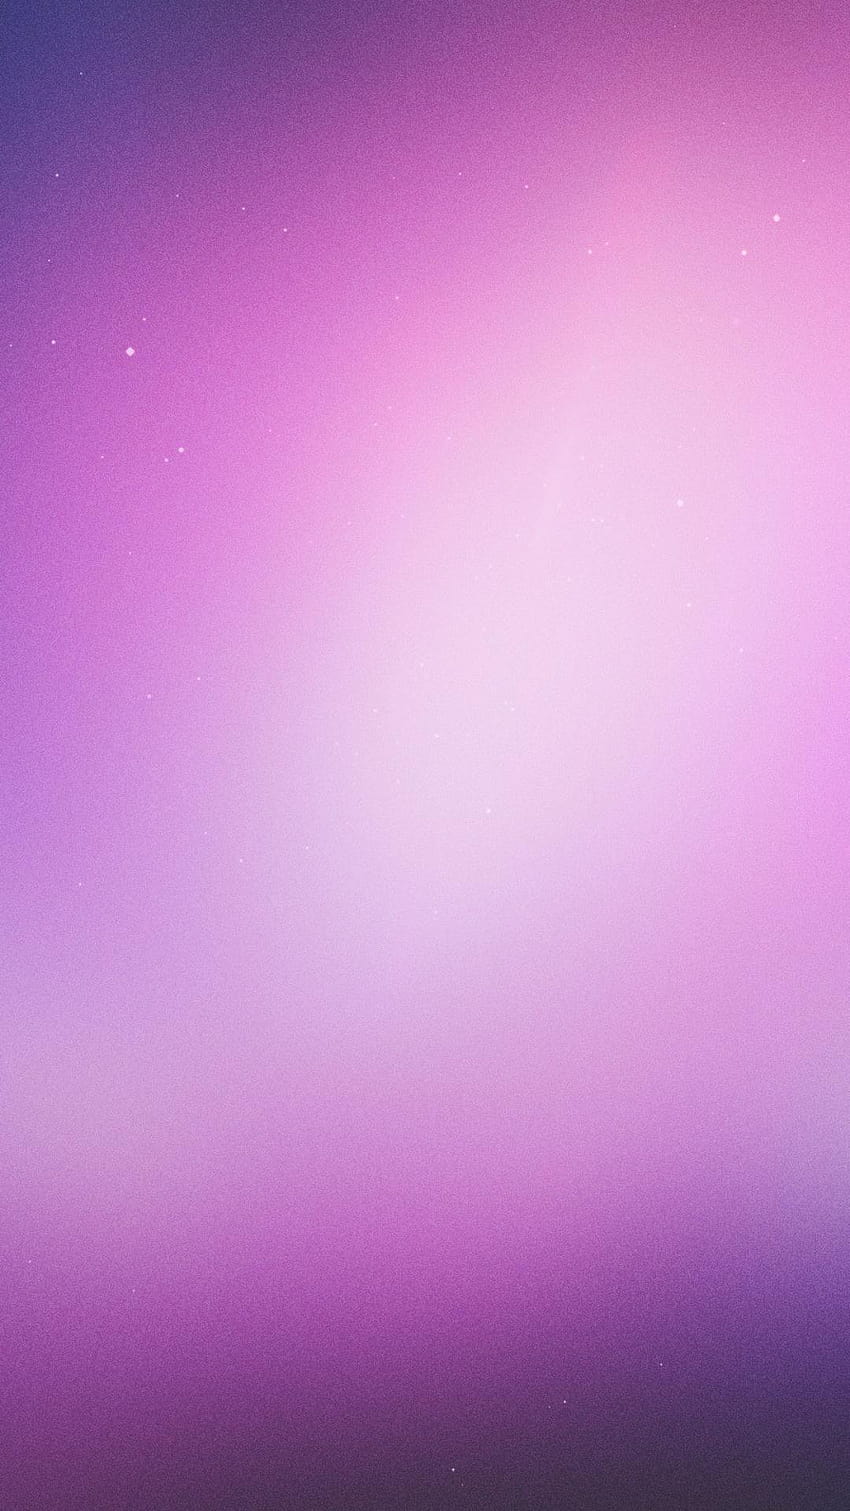 Purple plain backgrounds, plain purple background HD phone wallpaper